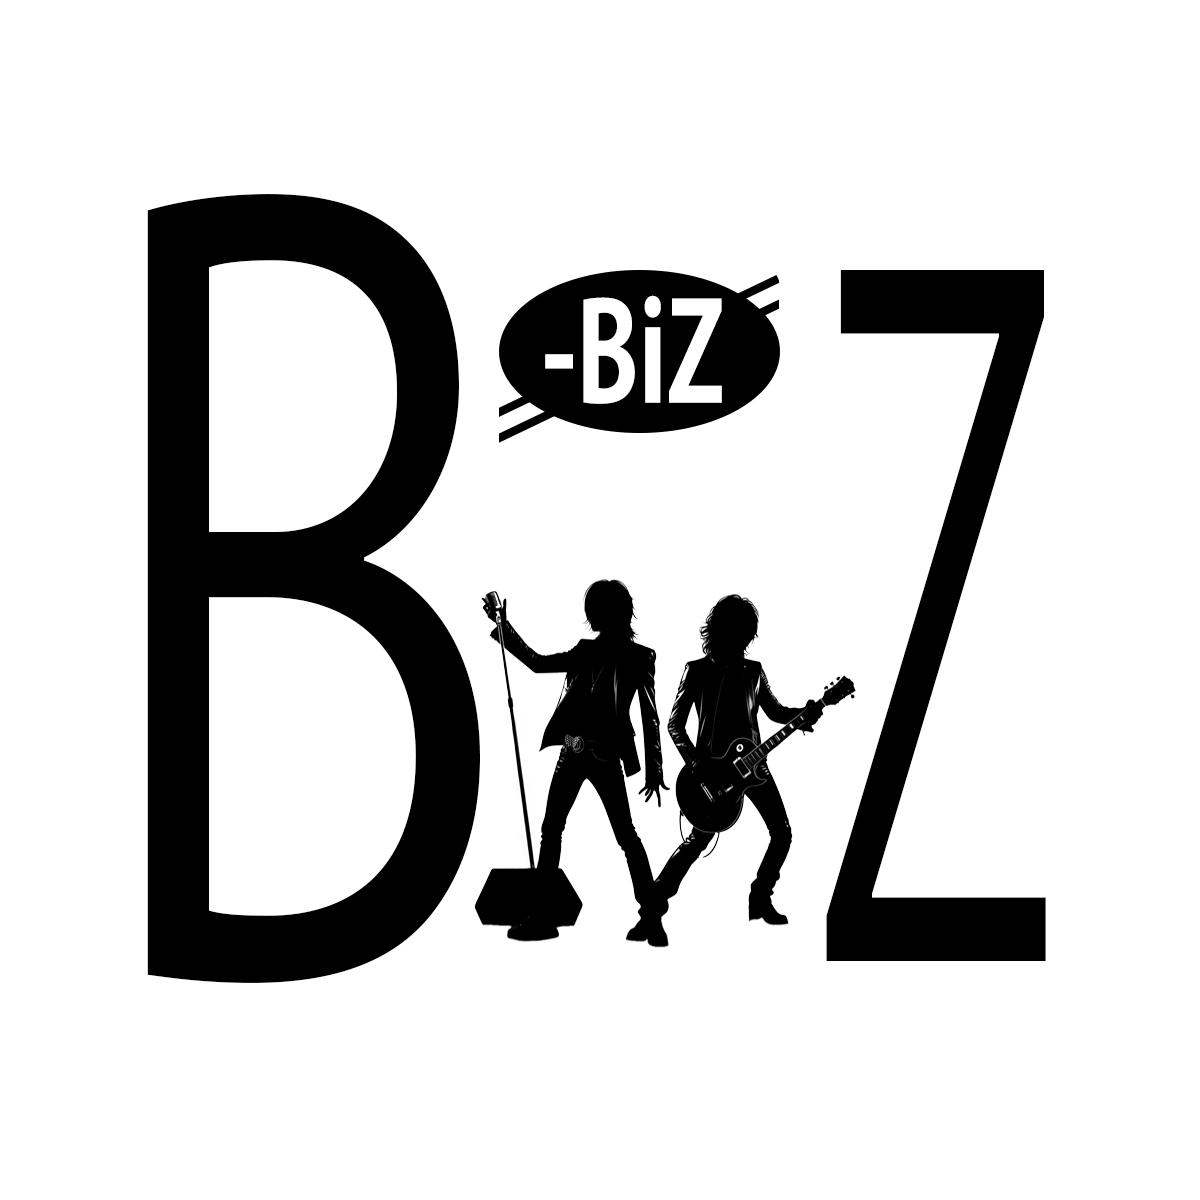 Bz-Biz（ビズビズ）